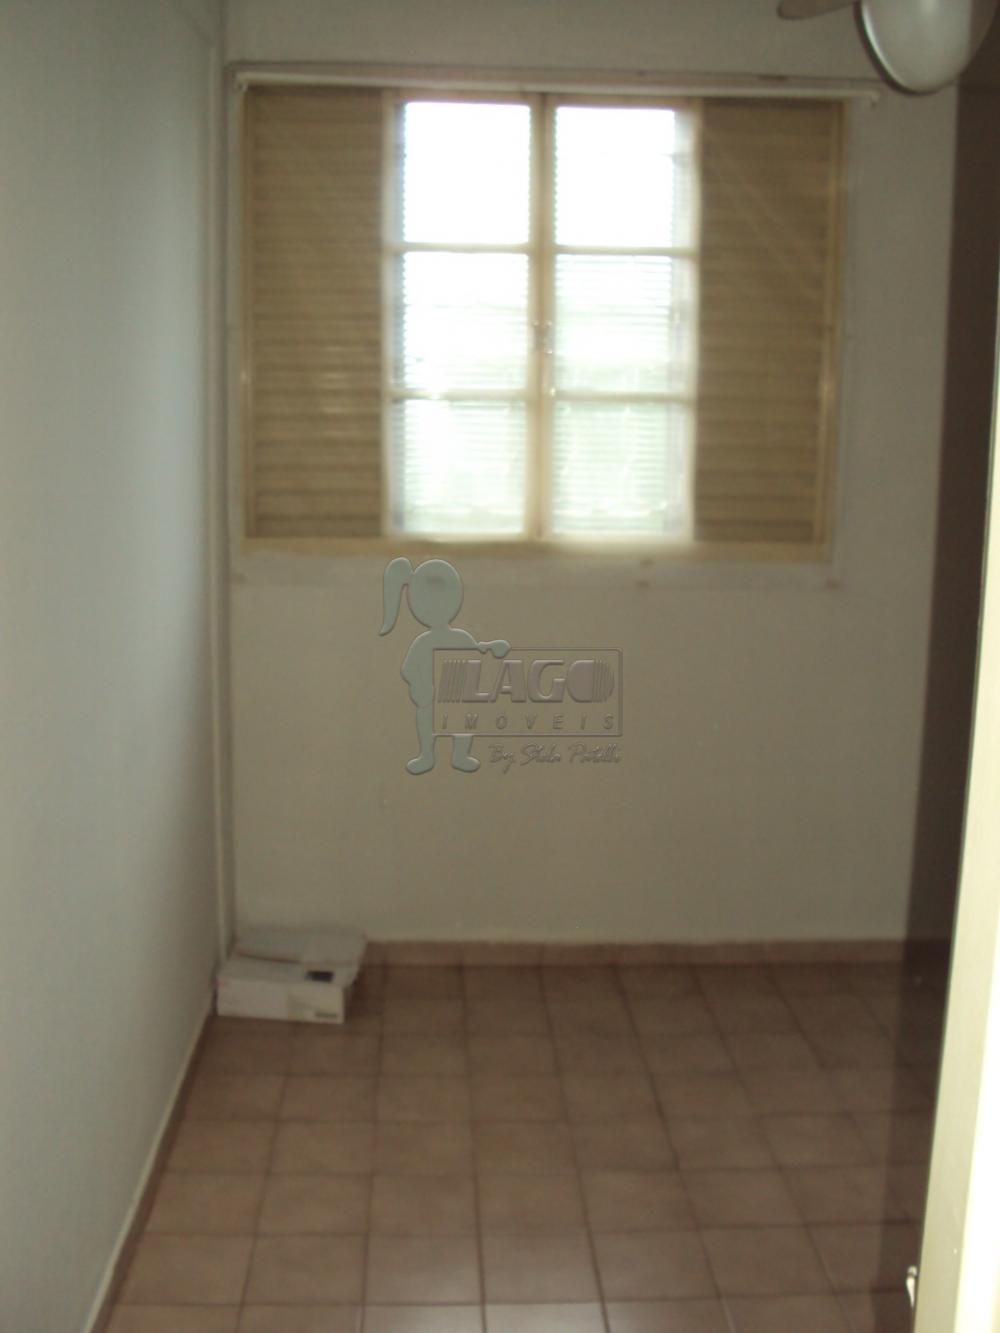 Alugar Apartamentos / Padrão em Ribeirão Preto R$ 593,00 - Foto 5